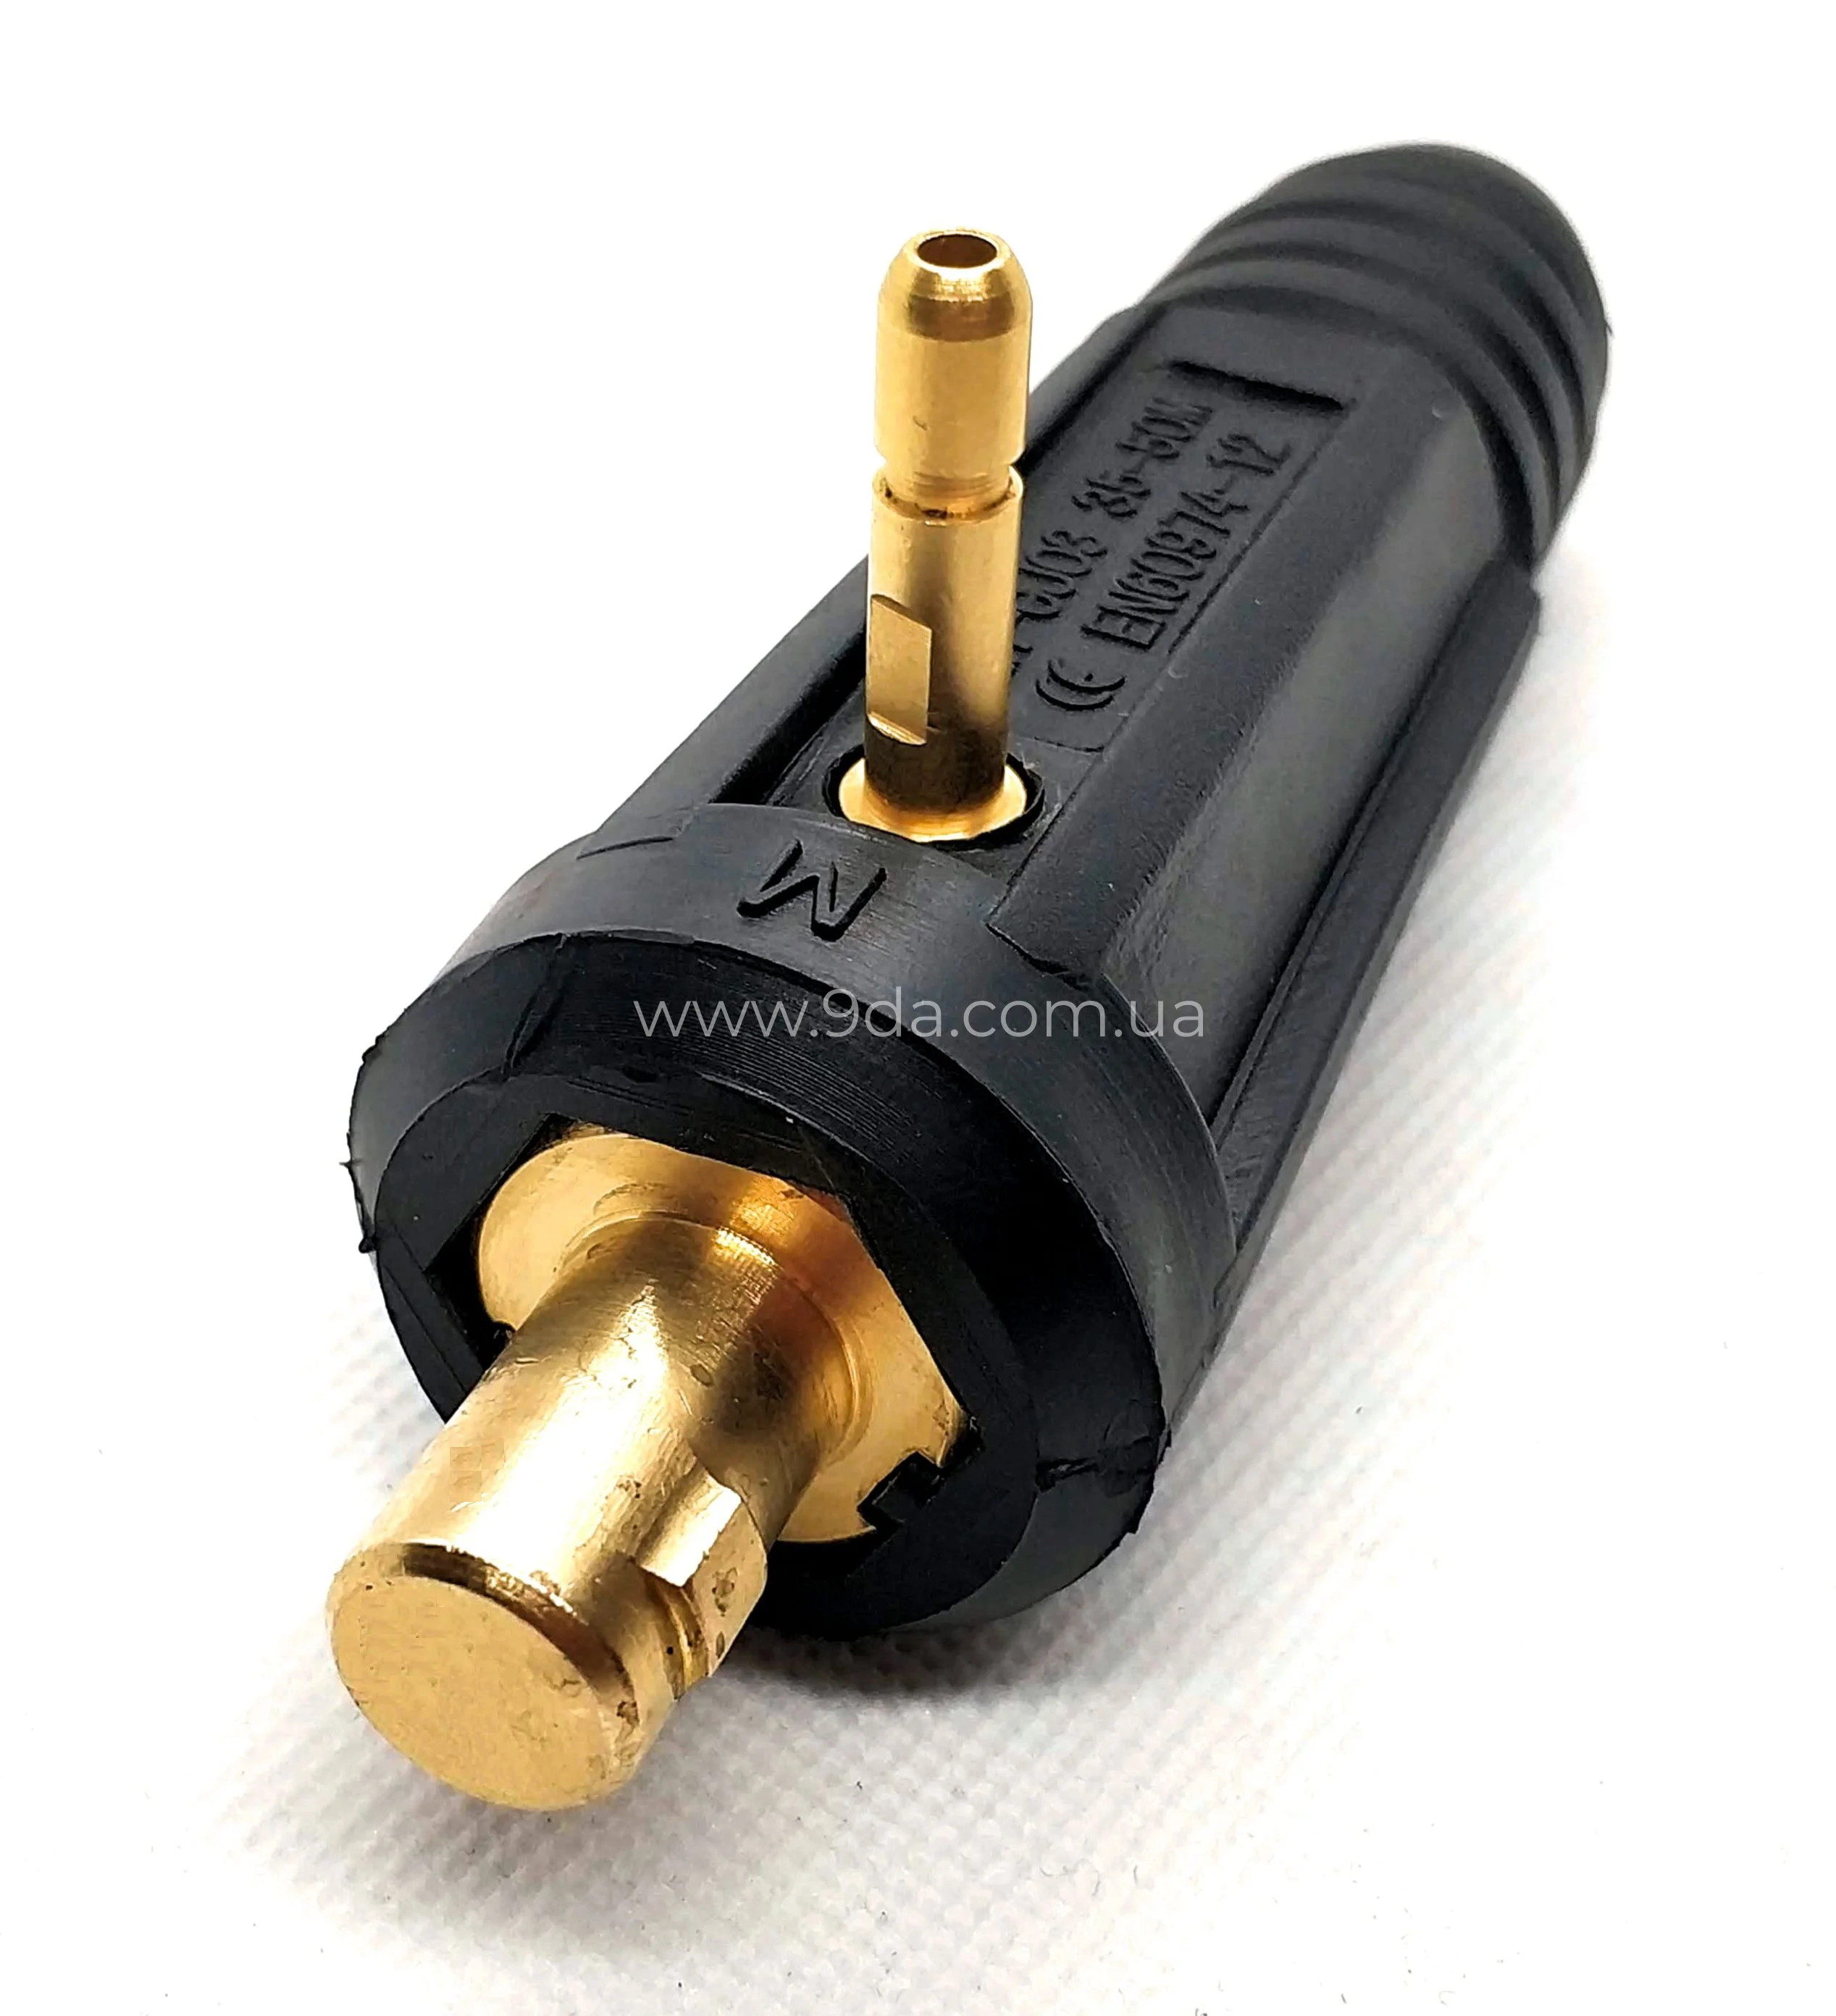 Штекер на кабеля, байонентне під газ TIG 10-25мм, ф9мм, M12x1мм, KWeld - 1